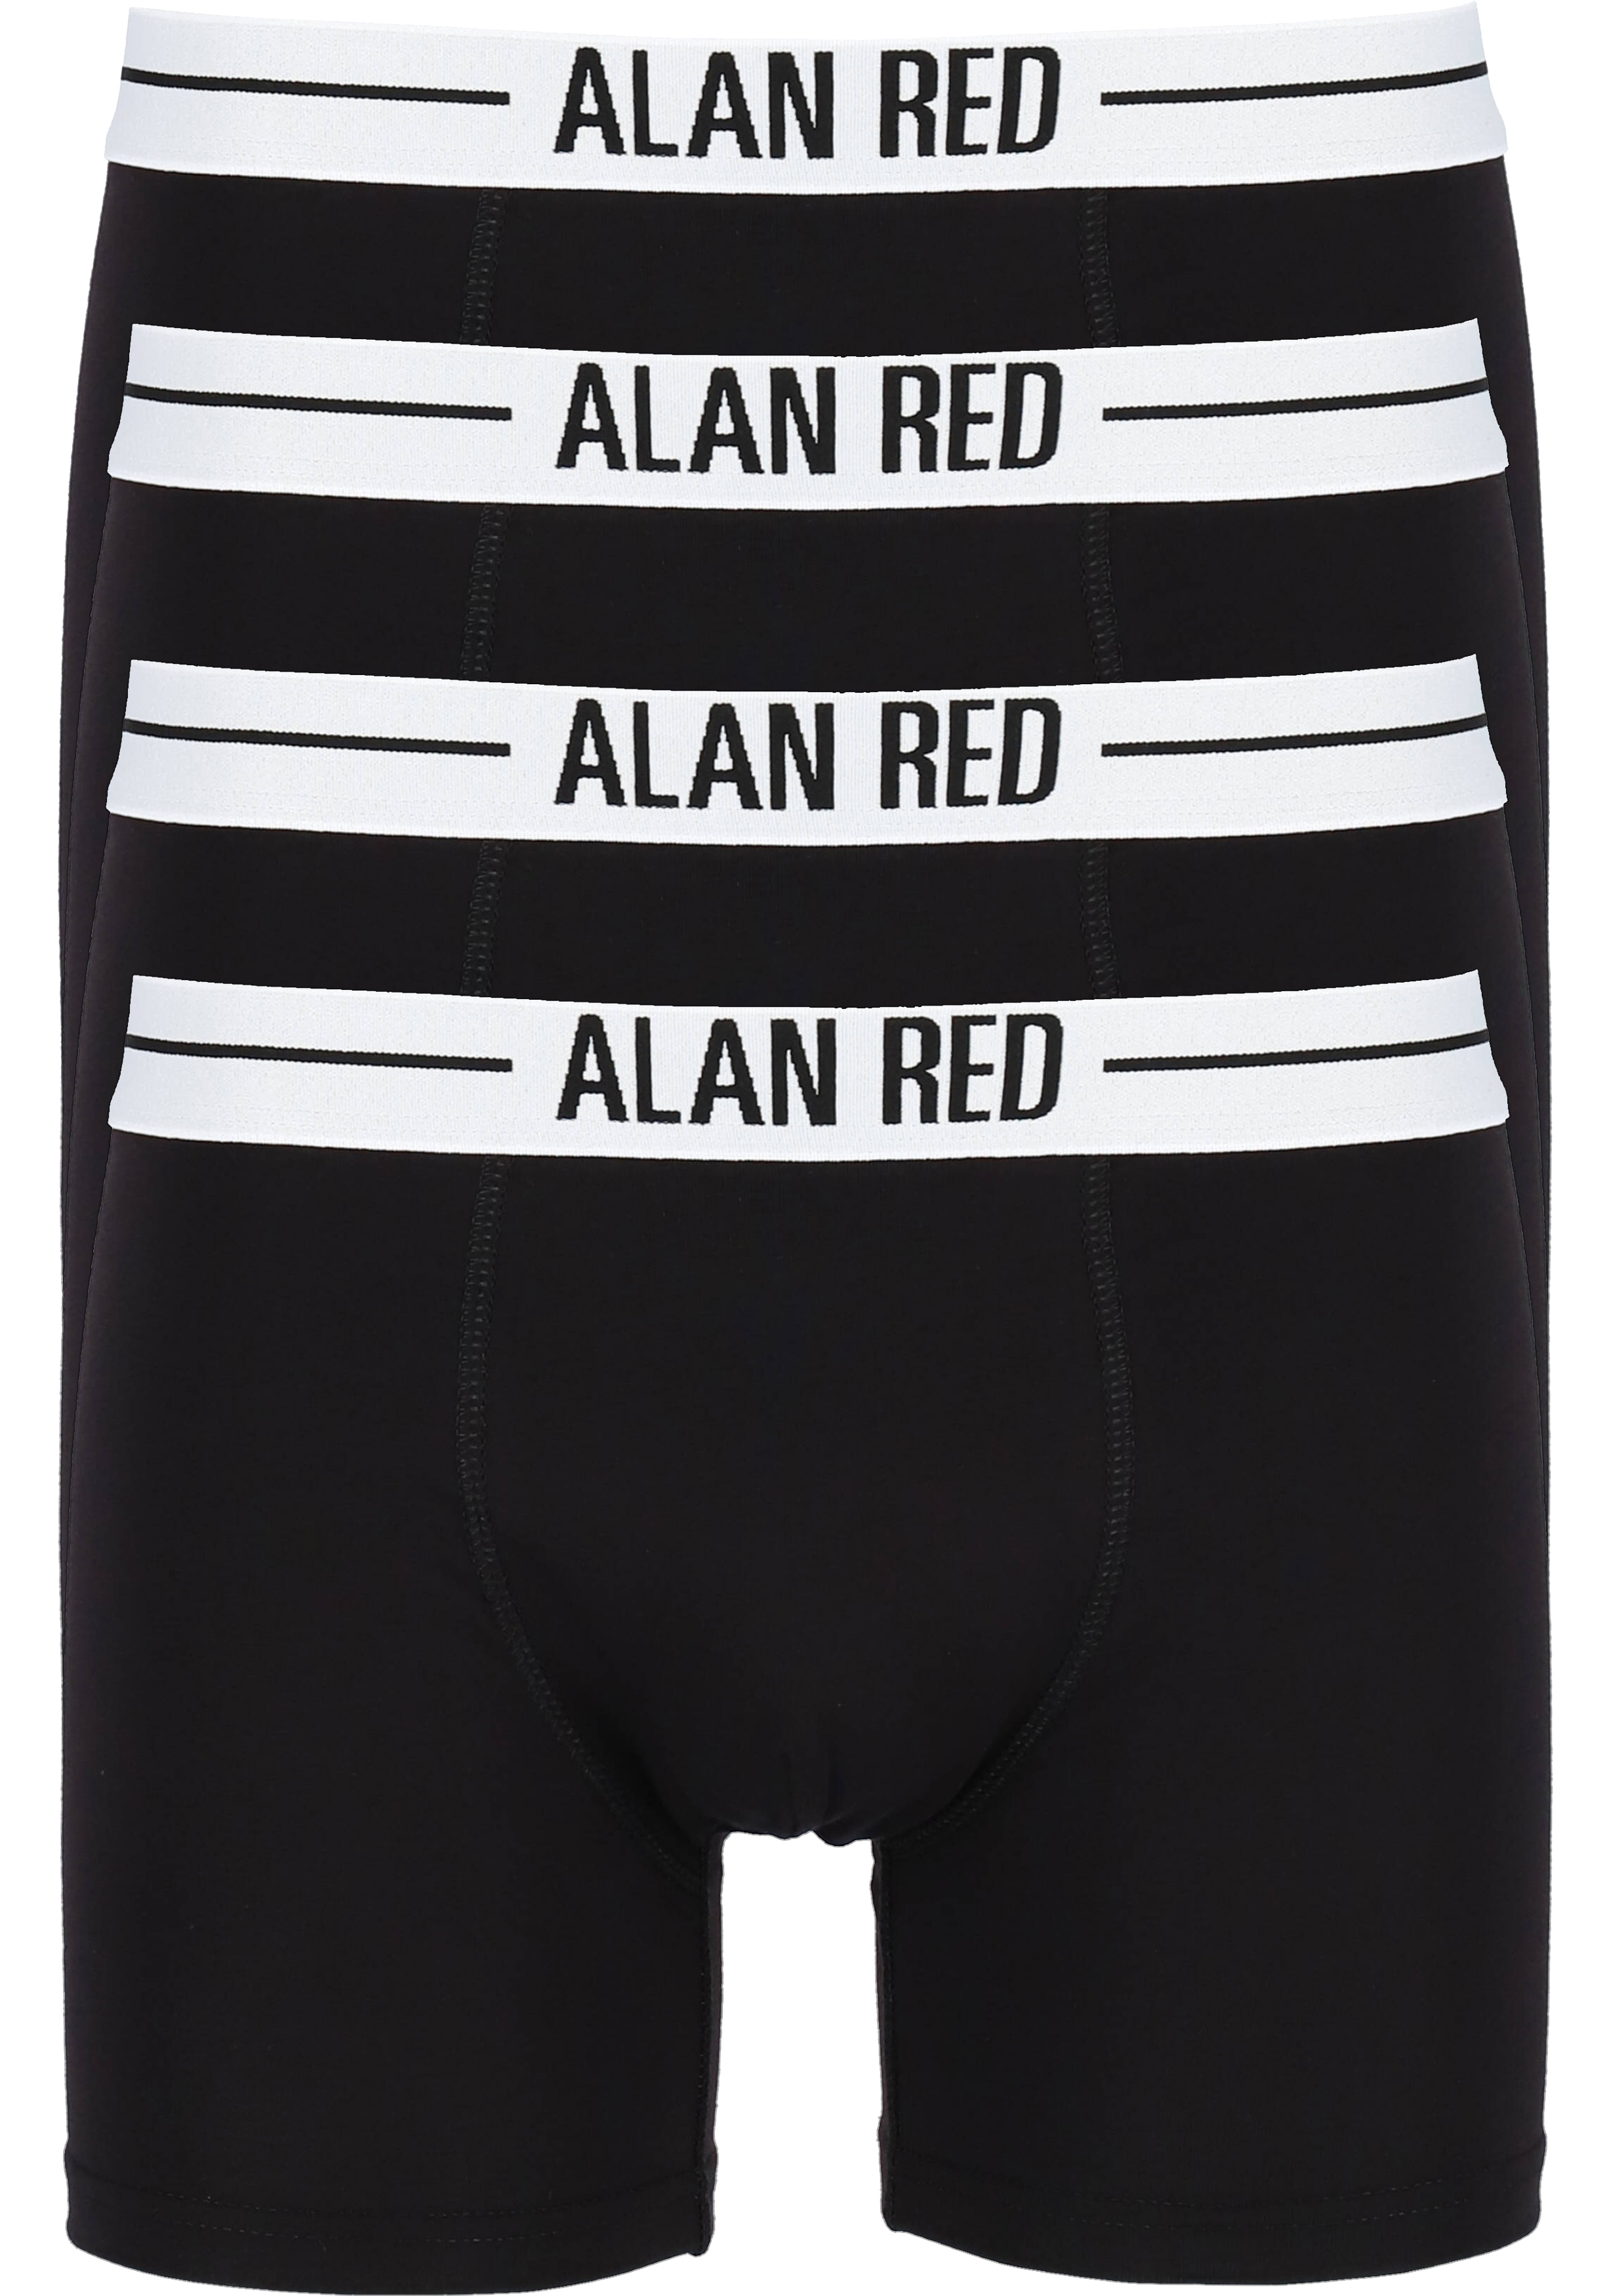 ALAN RED boxershorts (4-pack), zwart